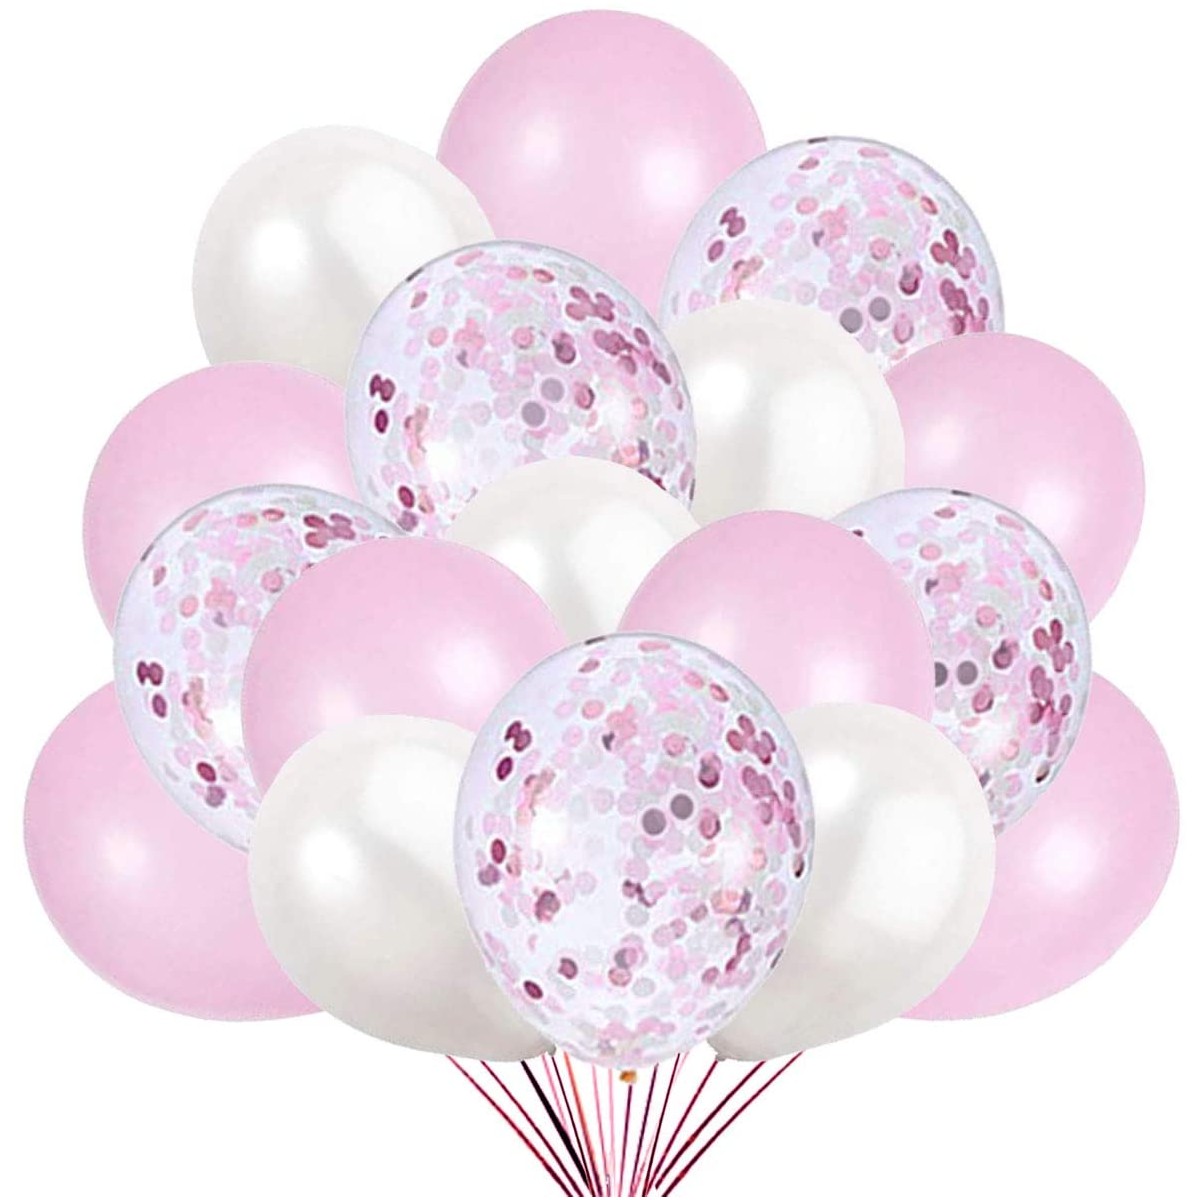 60 Pezzi Palloncini in Lattice e 2 fasce colorate Coriandoli Palloncini per Decorazioni Compleanno Anniversario Matrimonio Festa Confetti Balloon Palloncini Battesimo Oro rosa 